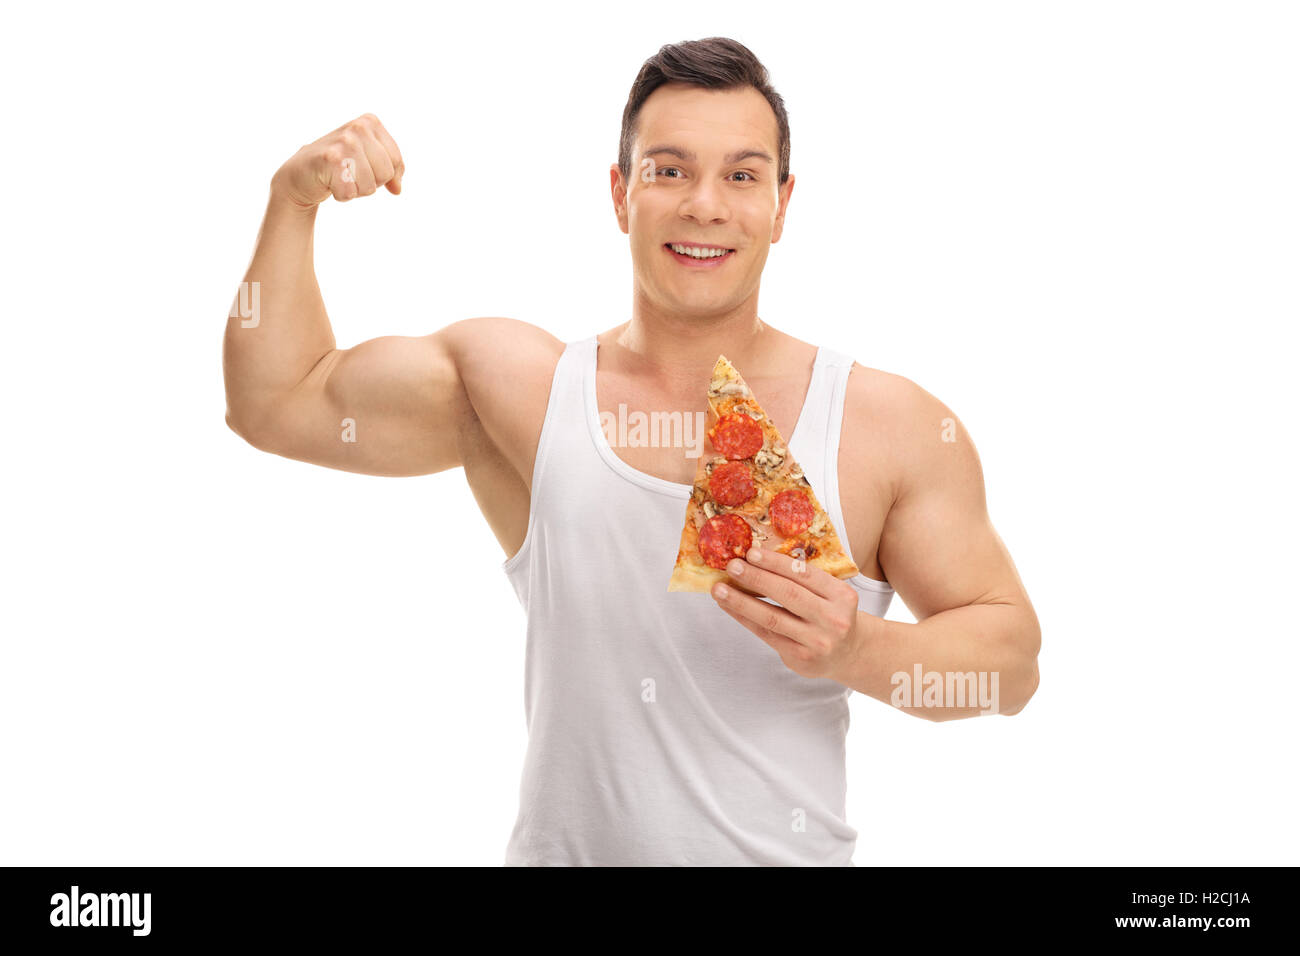 Uomo gioioso tenendo un trancio di pizza e flettendo il suo bicipite isolato su sfondo bianco Foto Stock